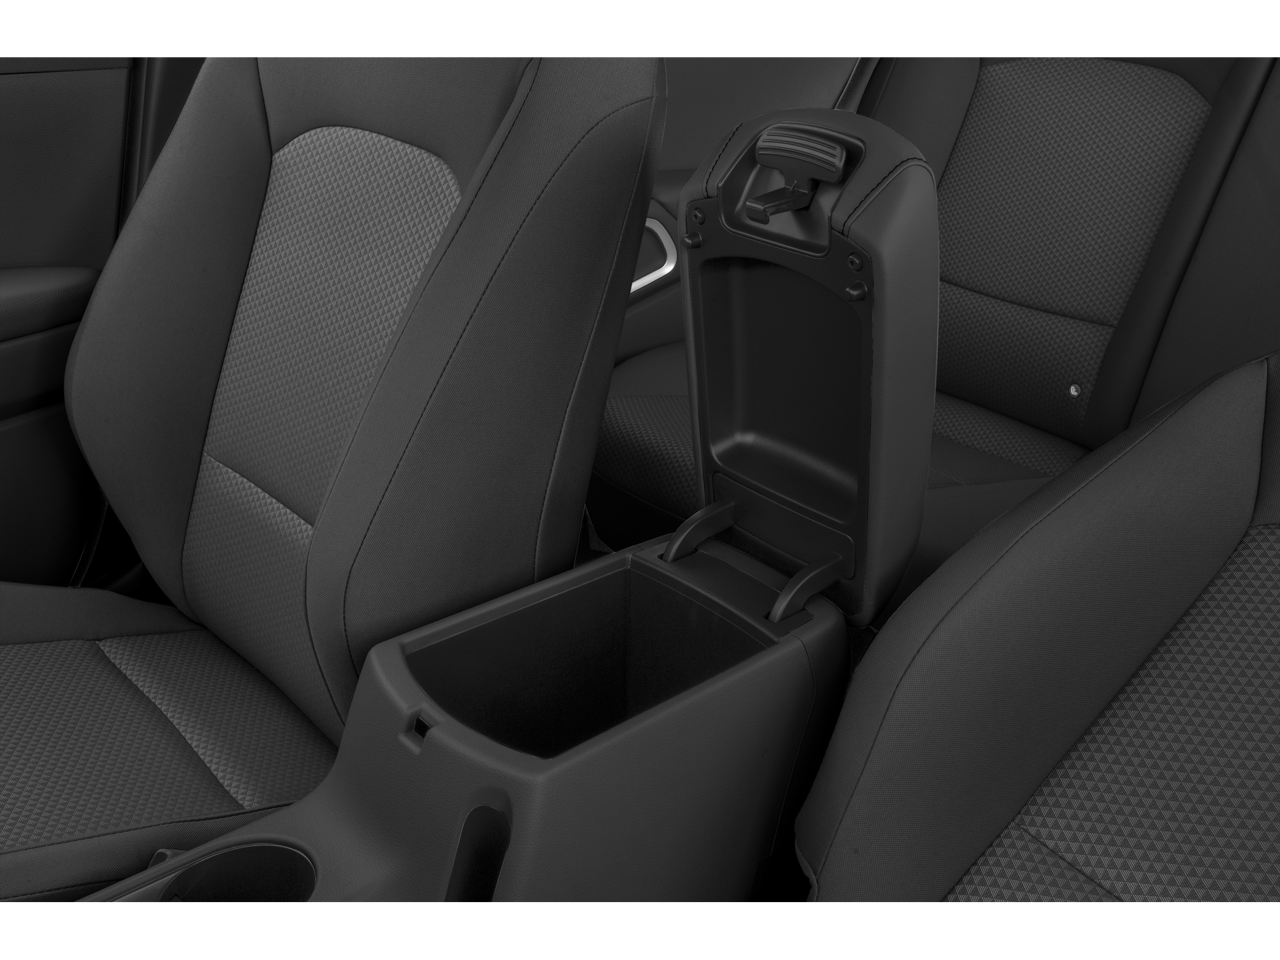 2021 Kia Soul LX w/MP3, CarPlay, 16" Wheels, Power Windows,